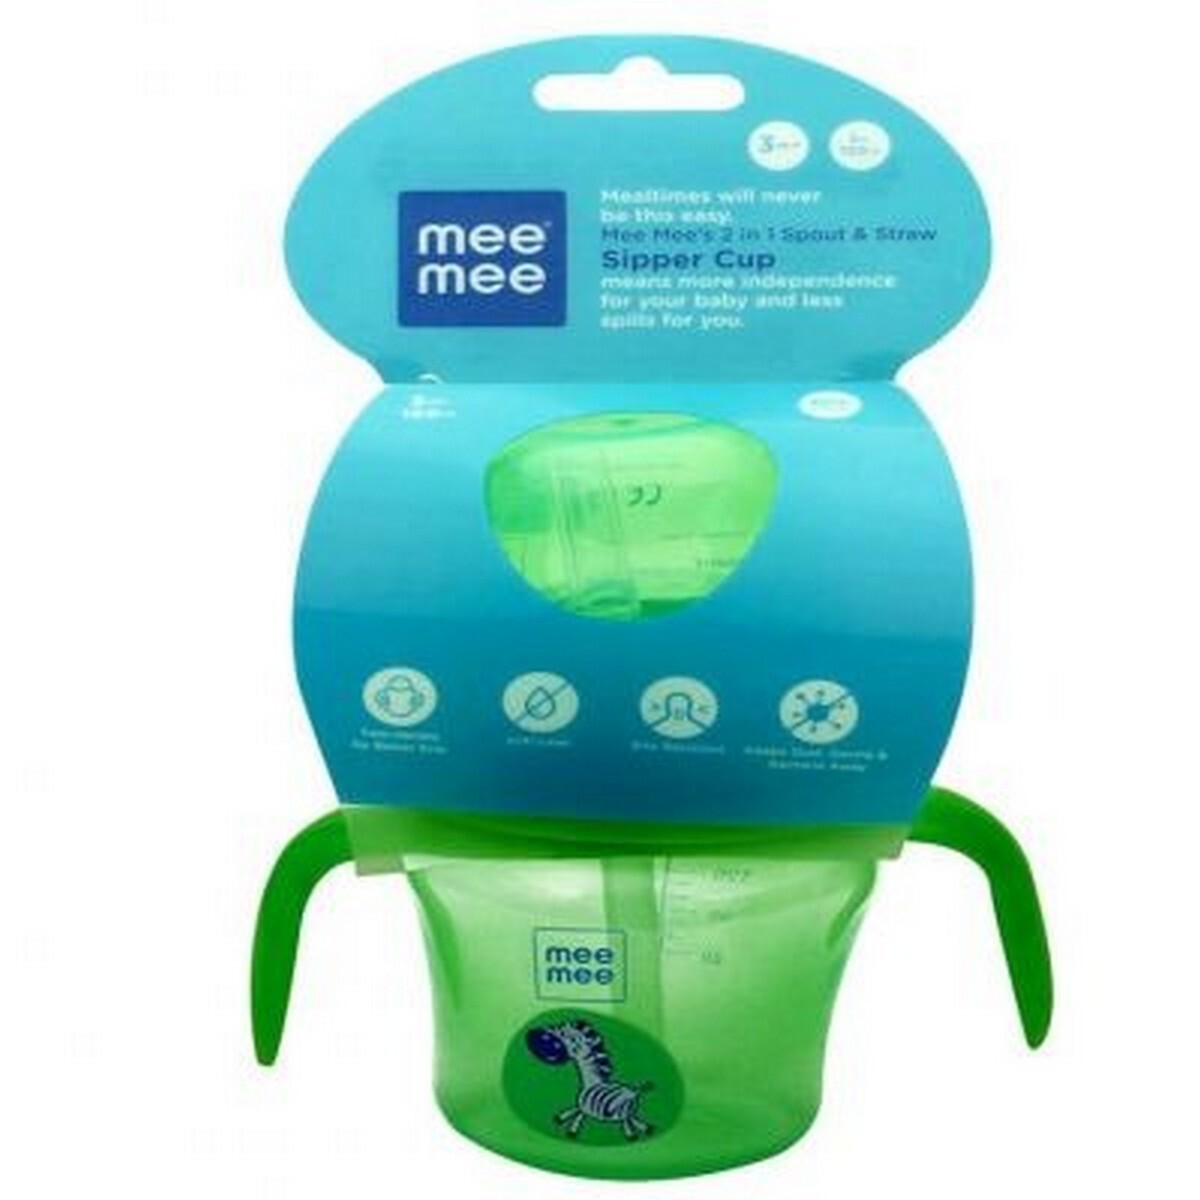 MeeMee Baby Feeding Mug MM-4010B